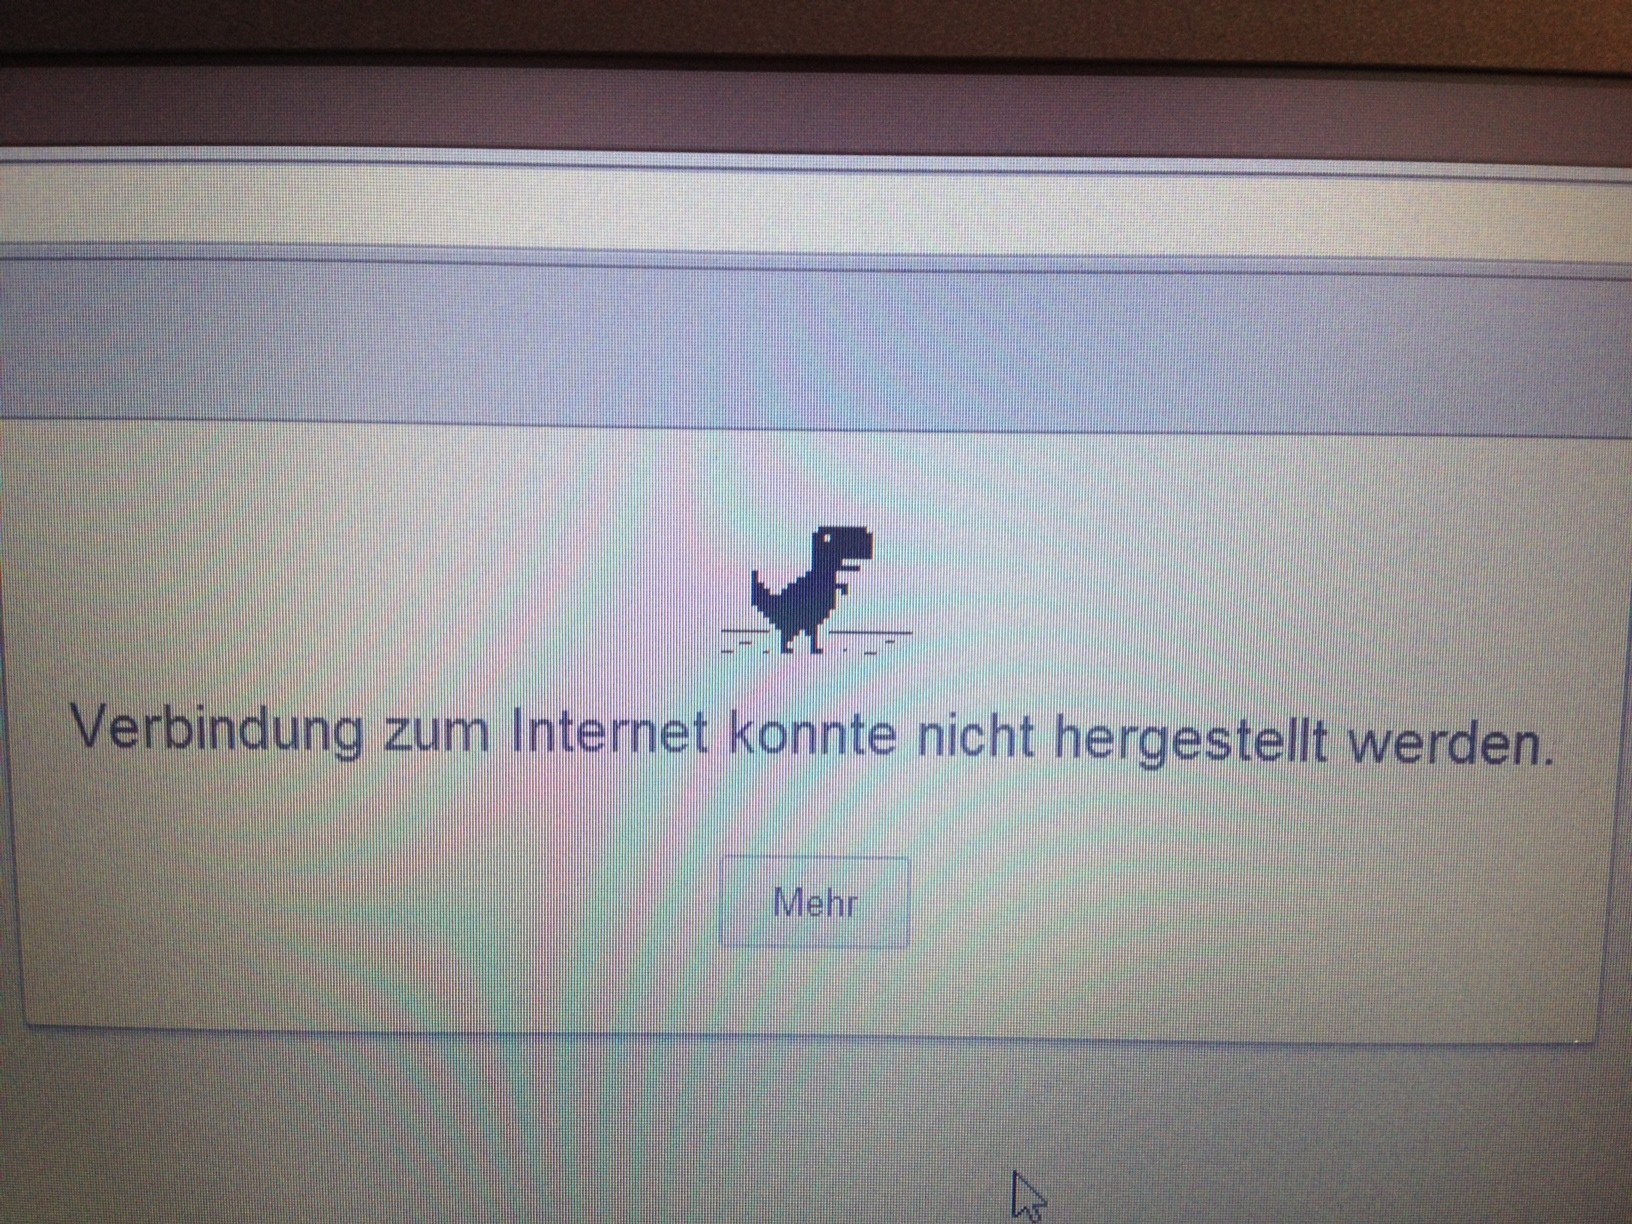 Das Bild zeigt ein Computerbild, welches besagt, dass die Verbindung mit dem Internet zur Zeit nicht möglich ist, als kleines Sinnbild dafür steht über der Schriftzeile ein kleiner Dinosaurier.